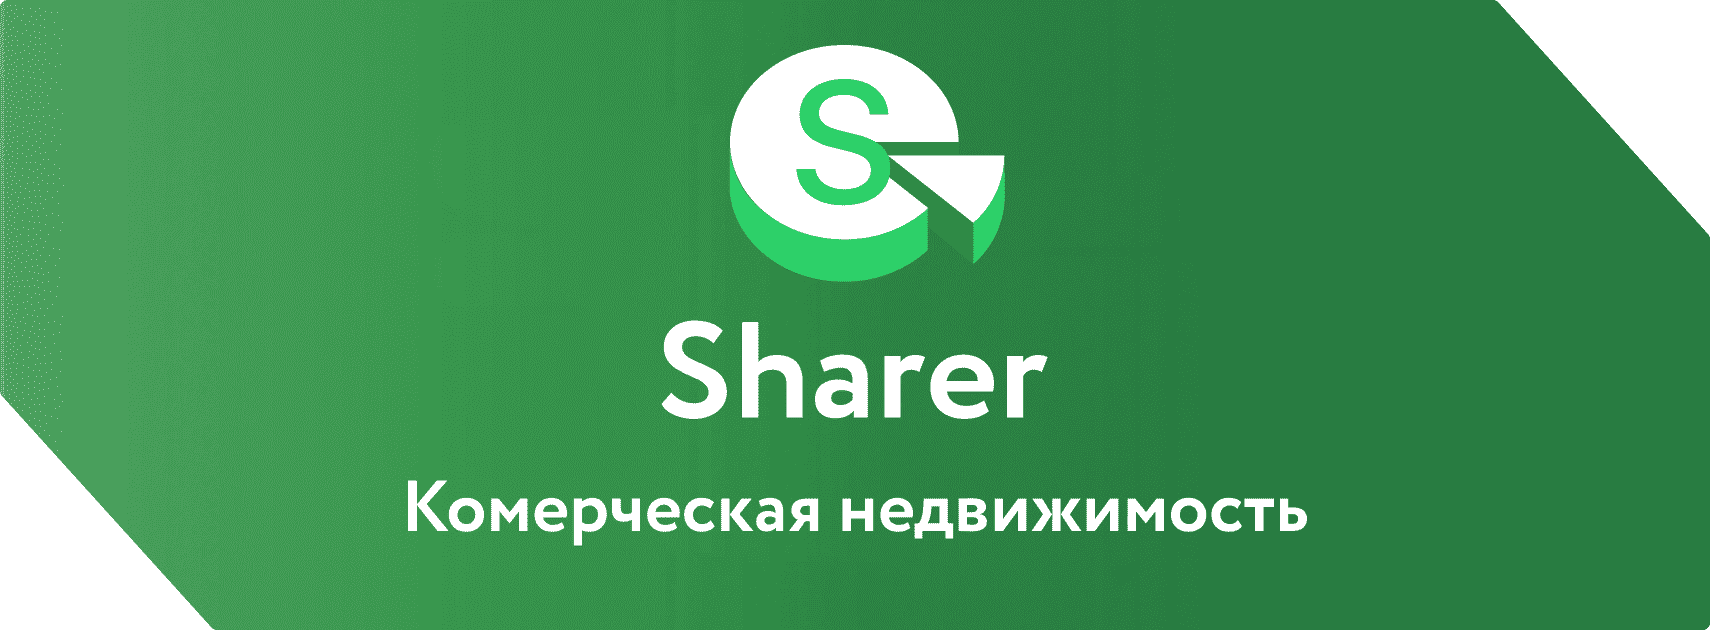 sharer